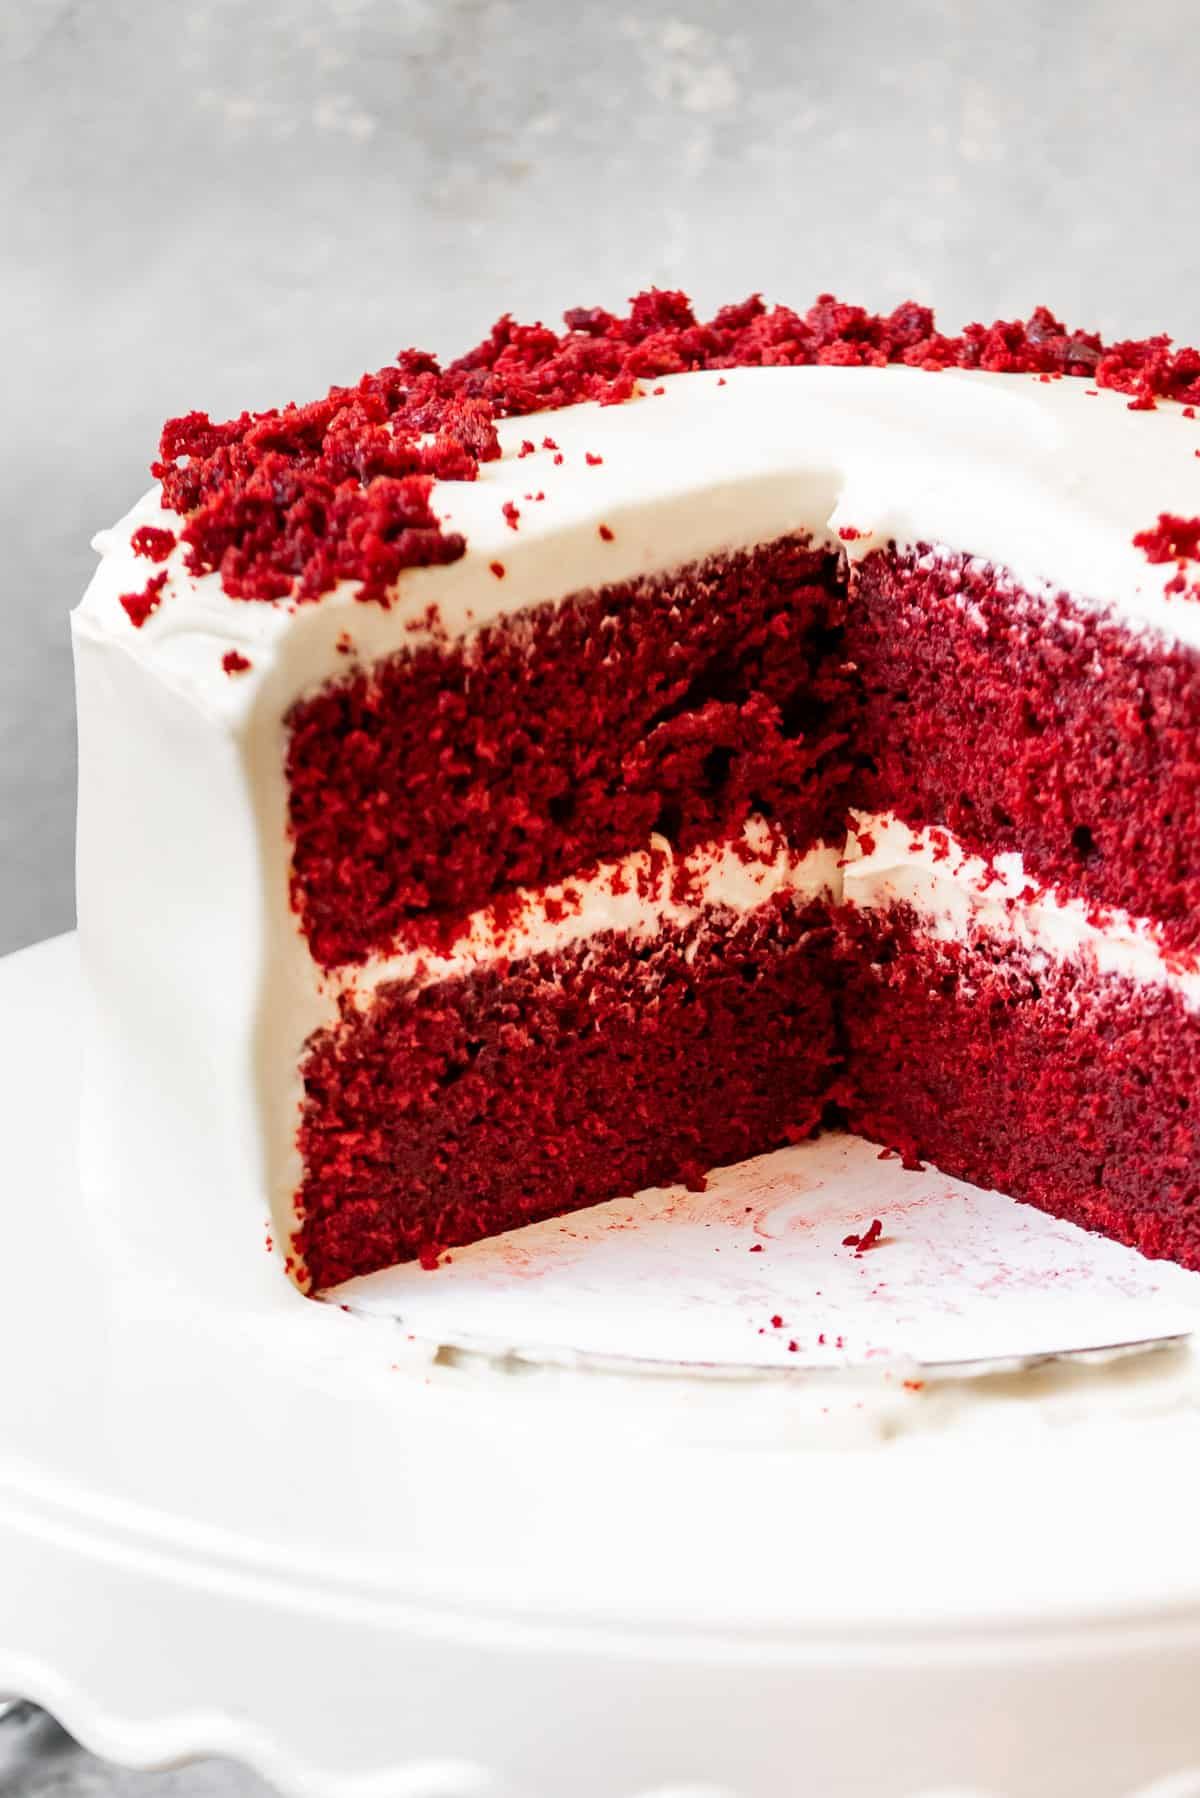 10" Homemade Red Velvet Cake at Studio Café  in Fayetteville, GA 30214 | YourMenu Online Ordering